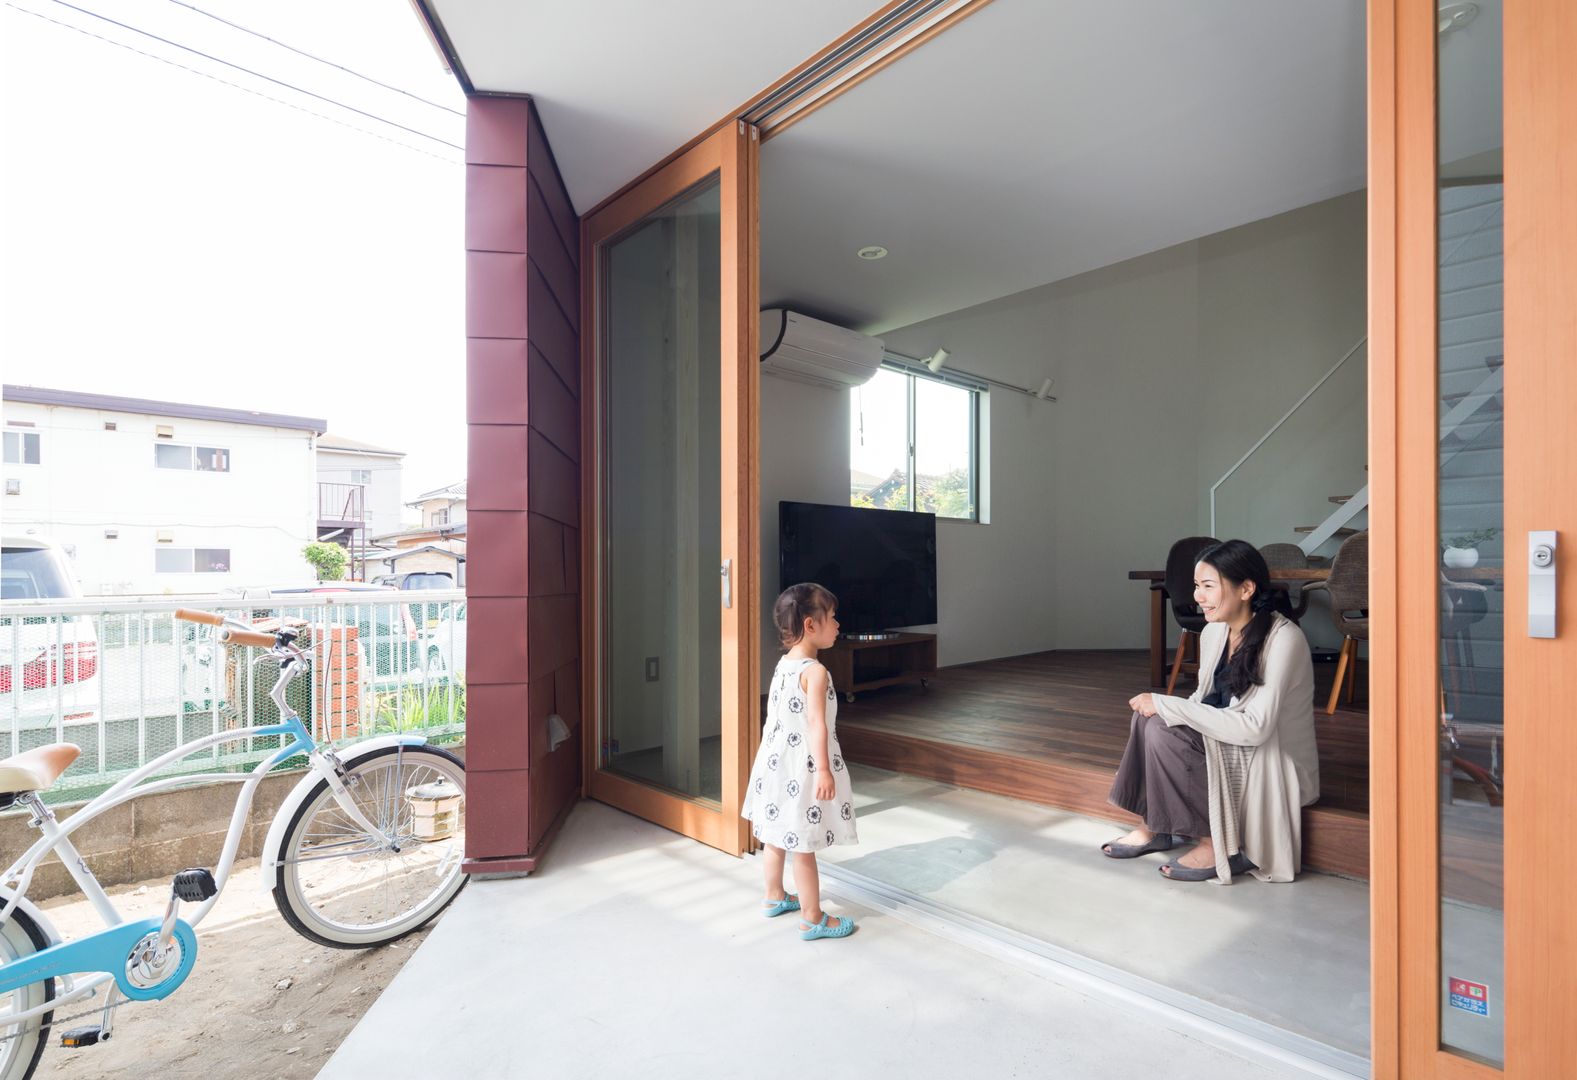 浜竹の家 House in Hamatake, 本間義章建築設計事務所 本間義章建築設計事務所 Modern home